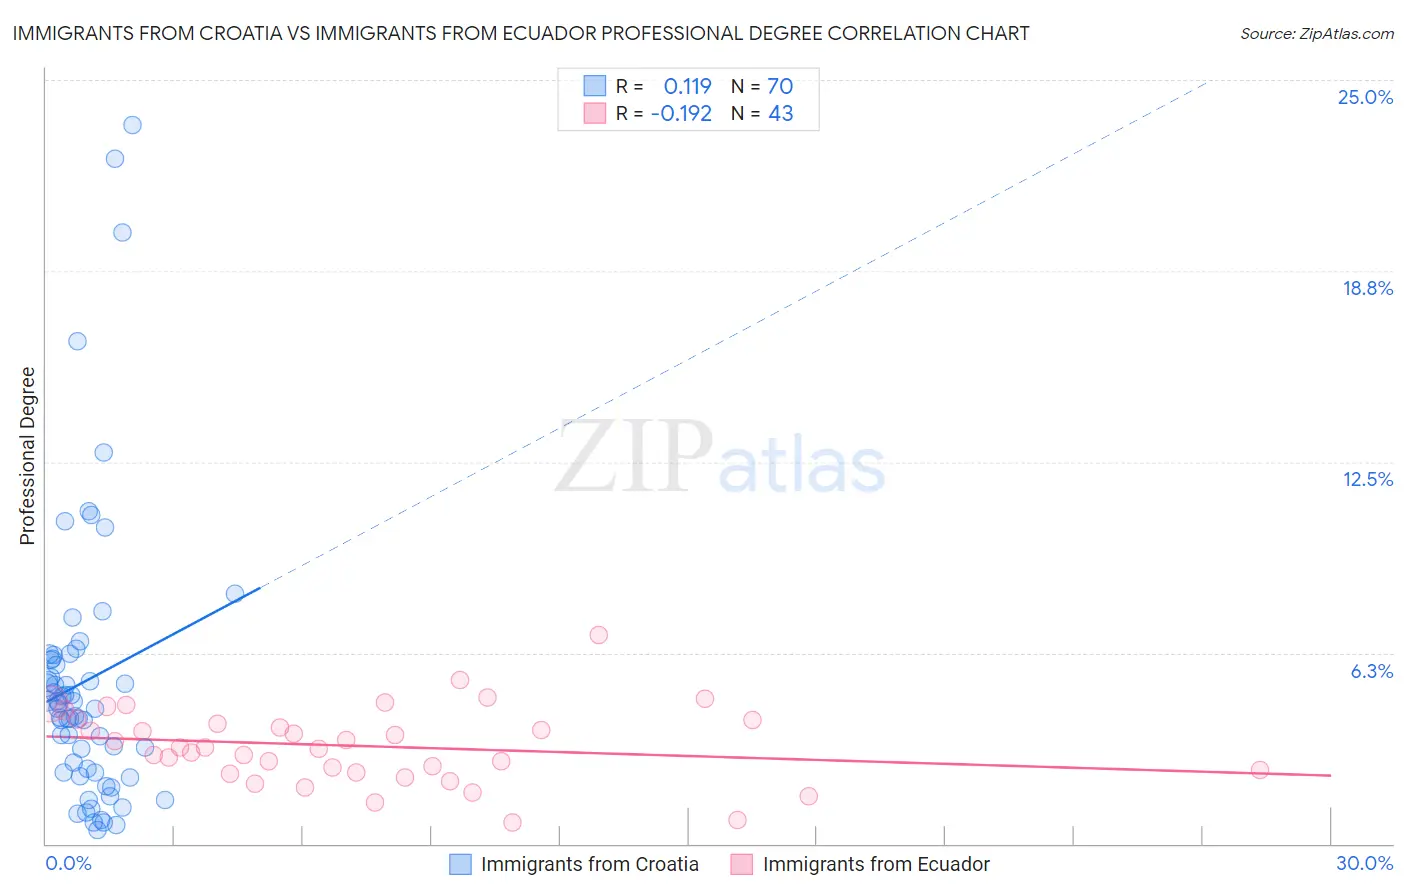 Immigrants from Croatia vs Immigrants from Ecuador Professional Degree